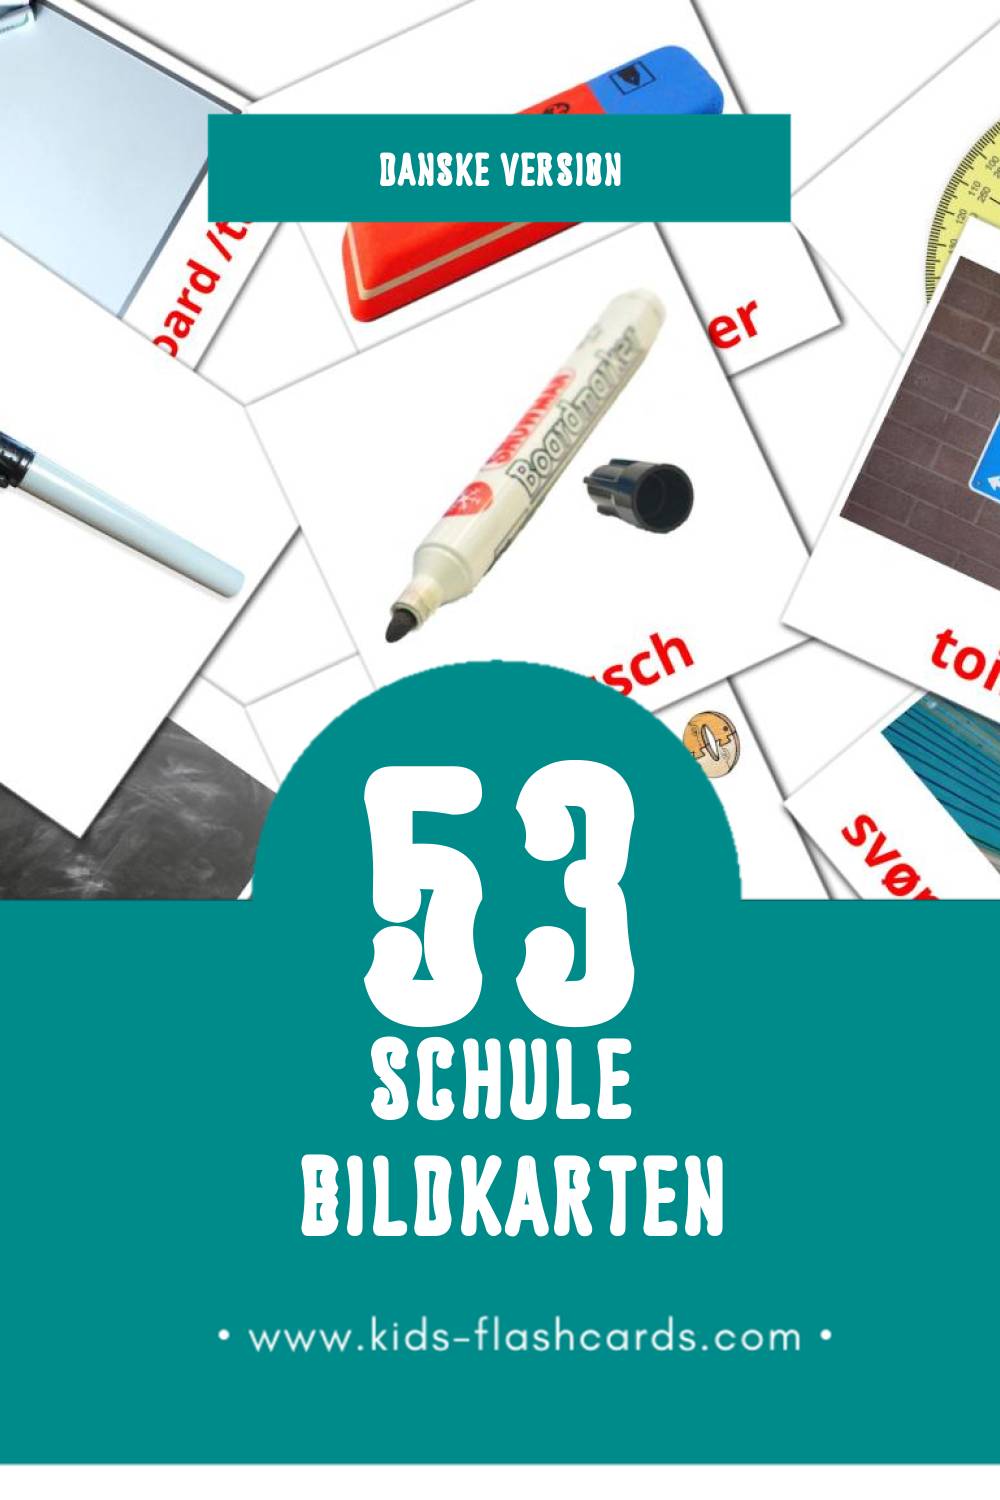 Visual Skole Flashcards für Kleinkinder (53 Karten in Dansk)